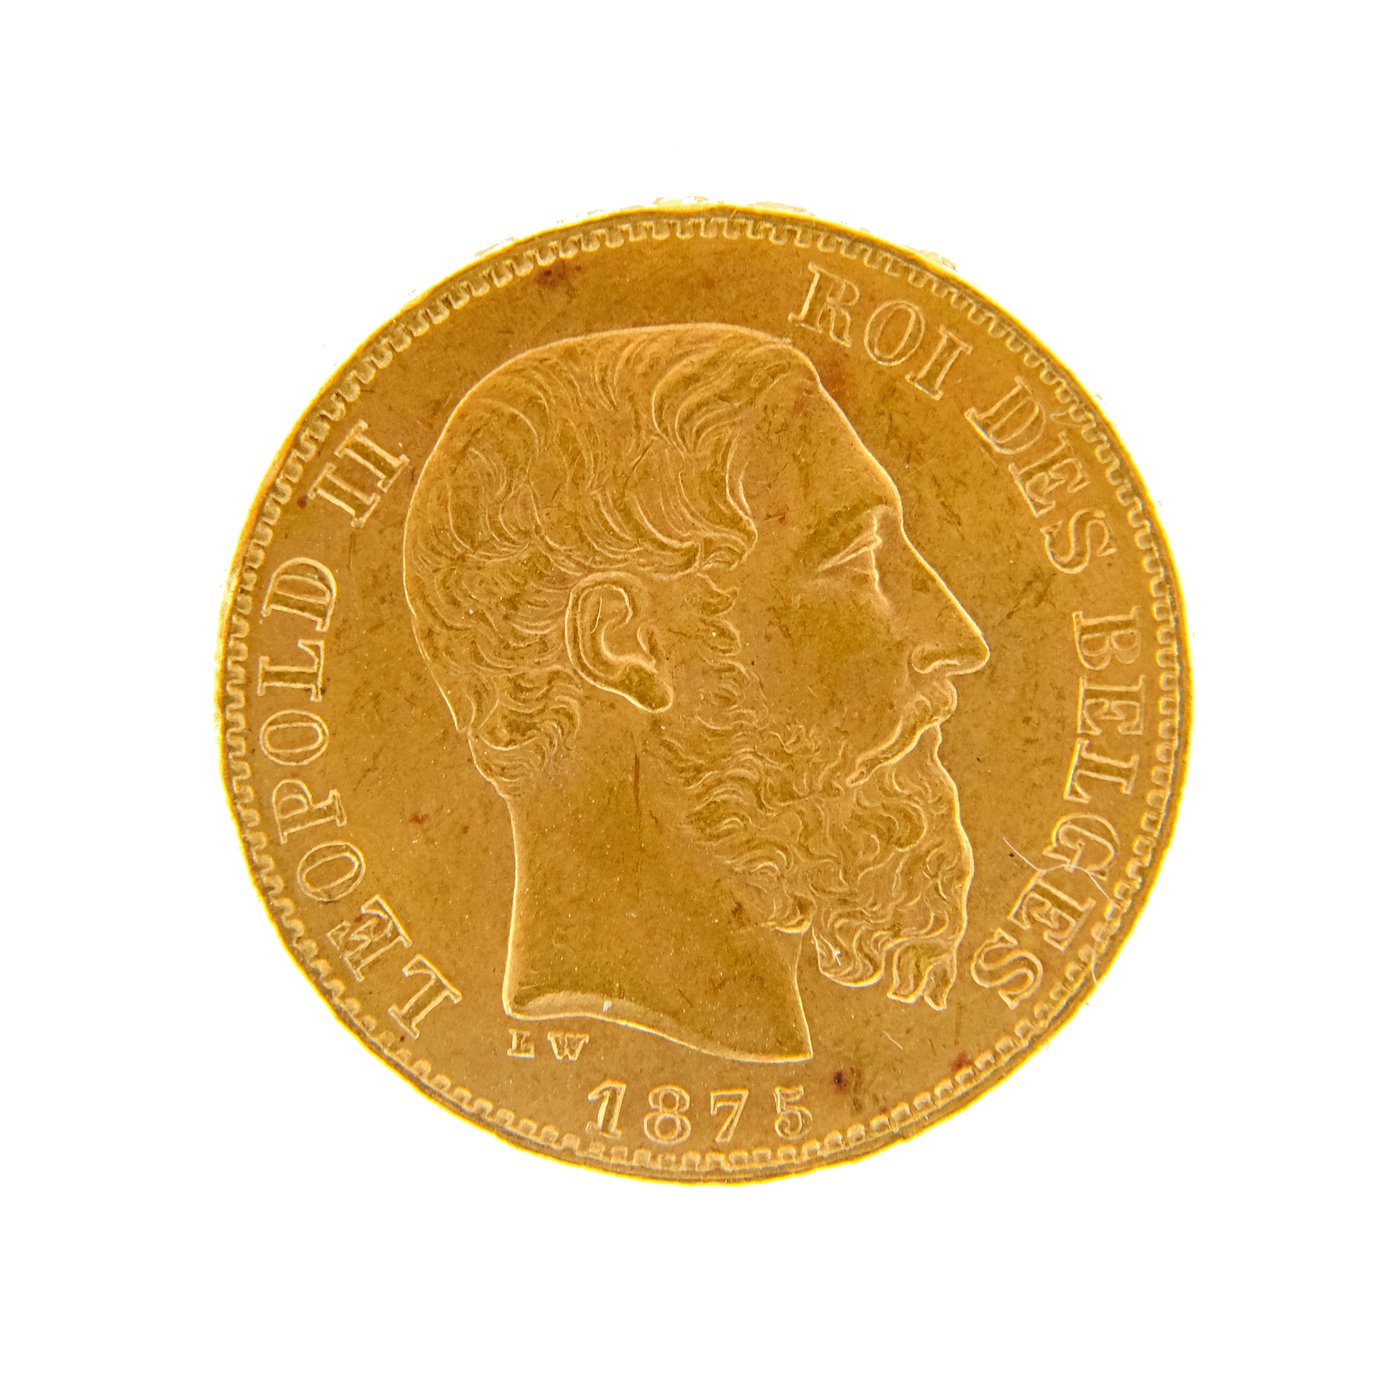 .. - Belgie zlatý 20 frank Leopold II. 1875, zlato 900/1000, hrubá hmotnost 6,45g